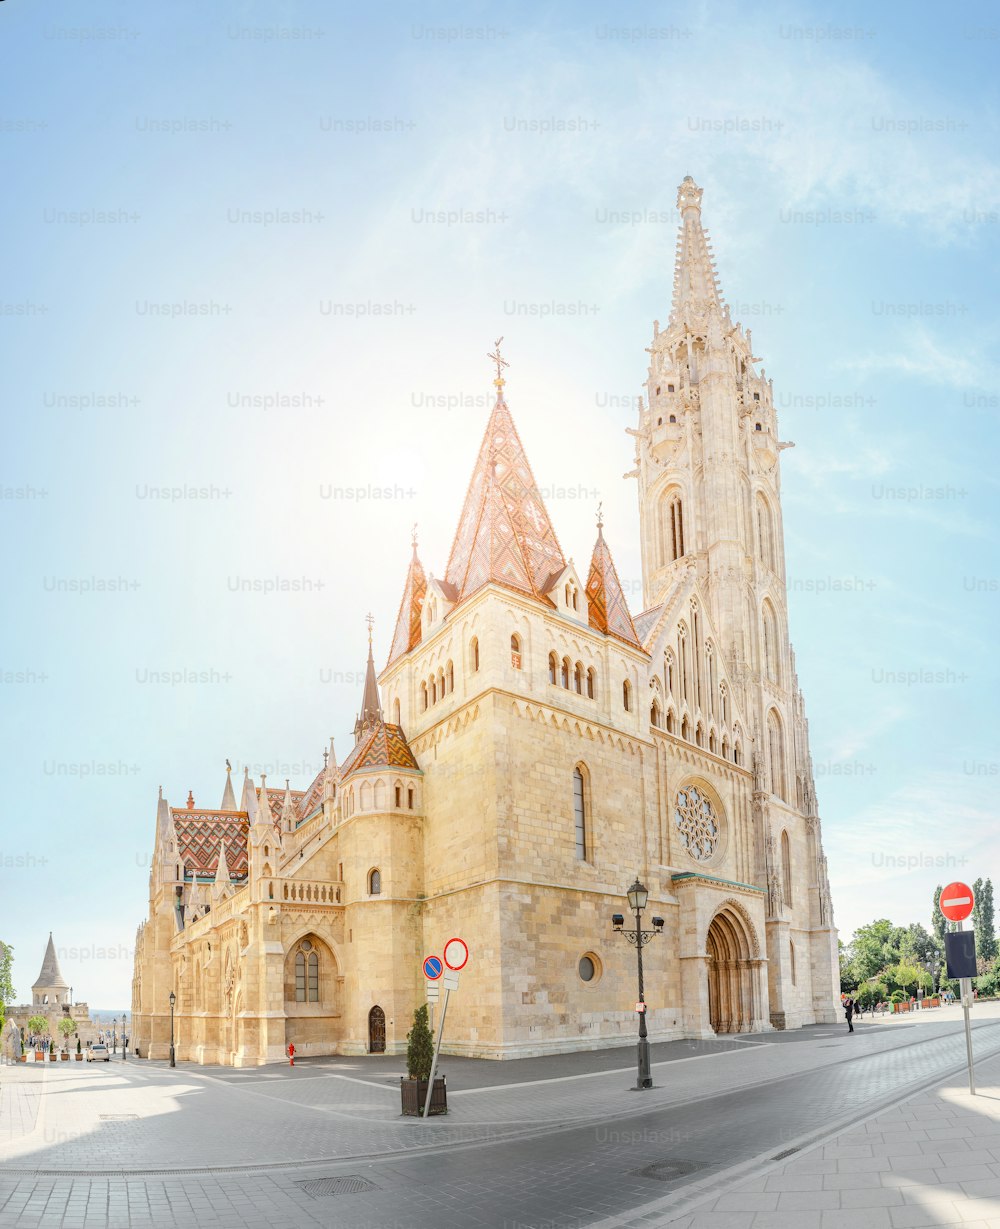 ブダペストの主な観光名所とランドマーク - 聖マーチャーシュ大聖堂の素晴らしい建築。教会はハンガリー最大のゴシック様式の寺院です。